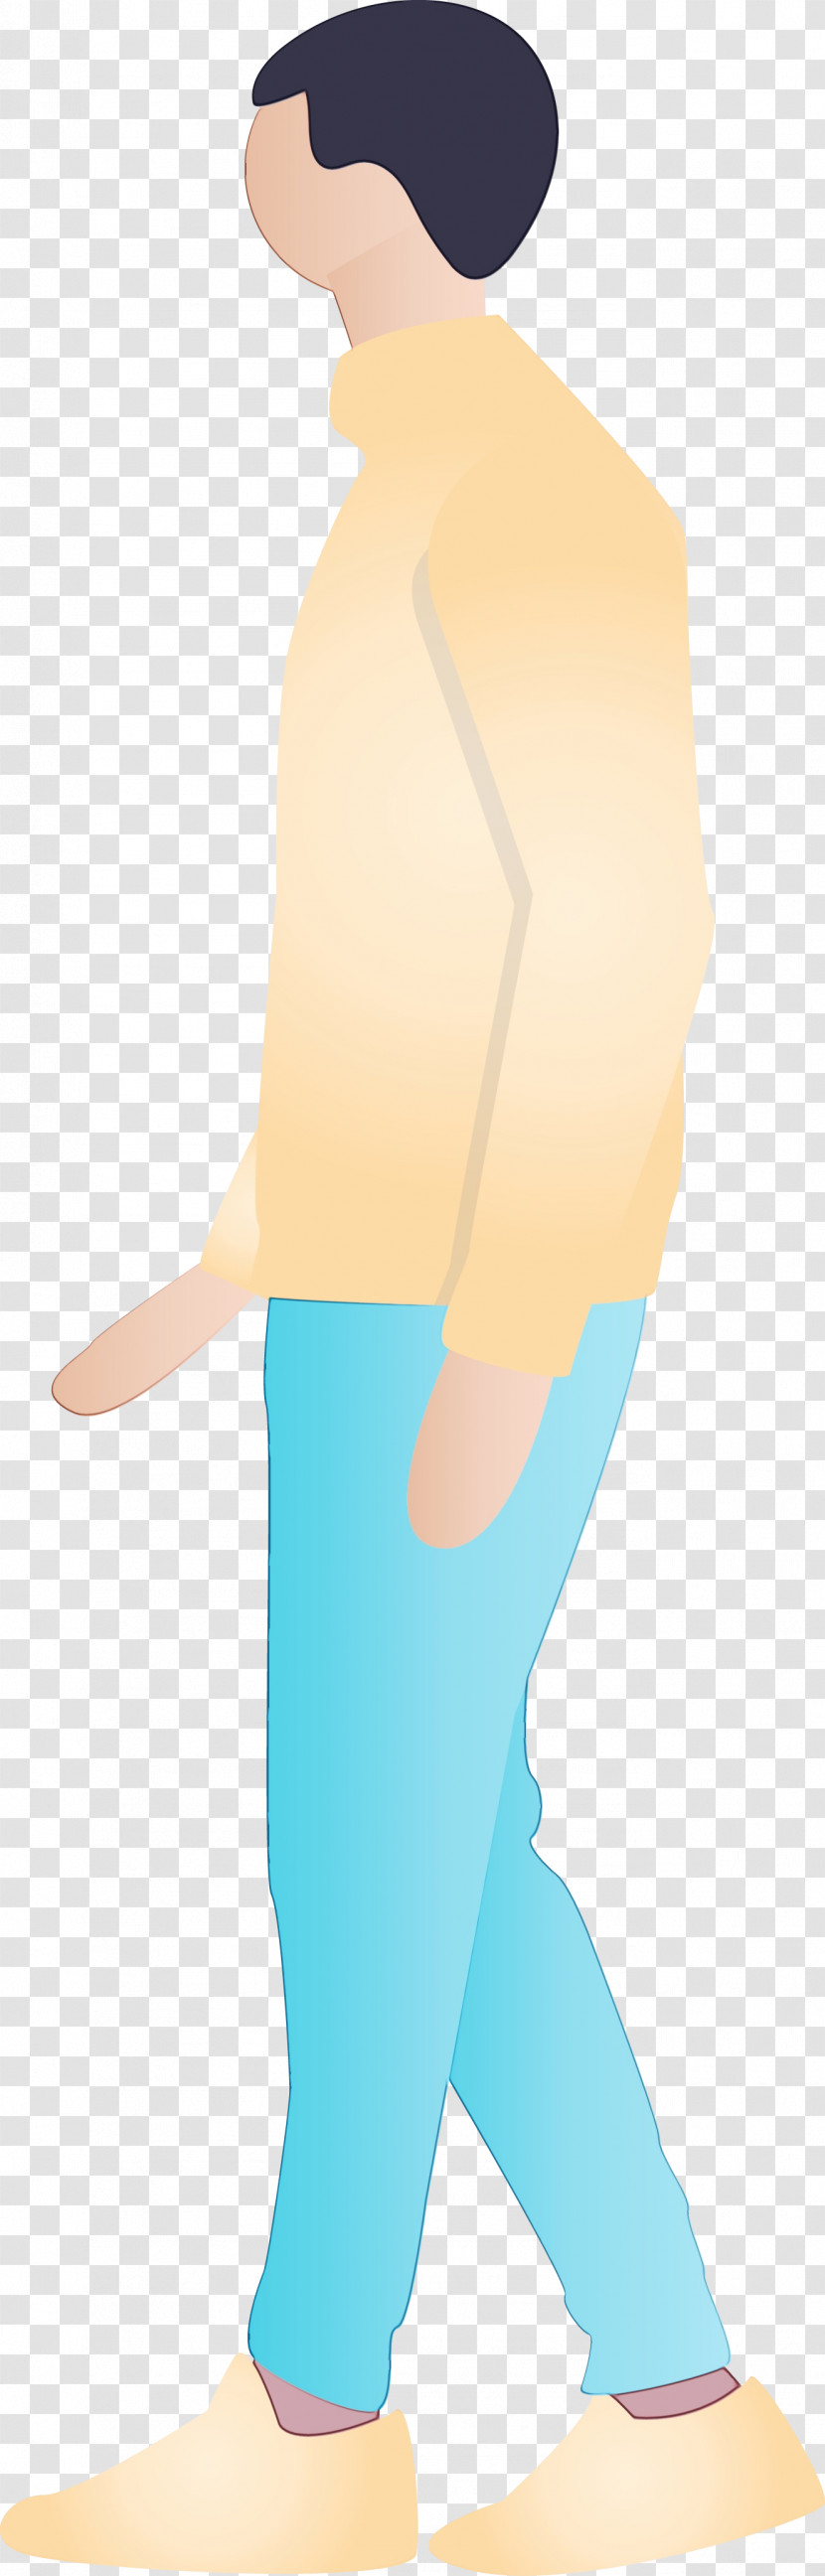 Turquoise Footwear Leg Knee Human Leg Transparent PNG